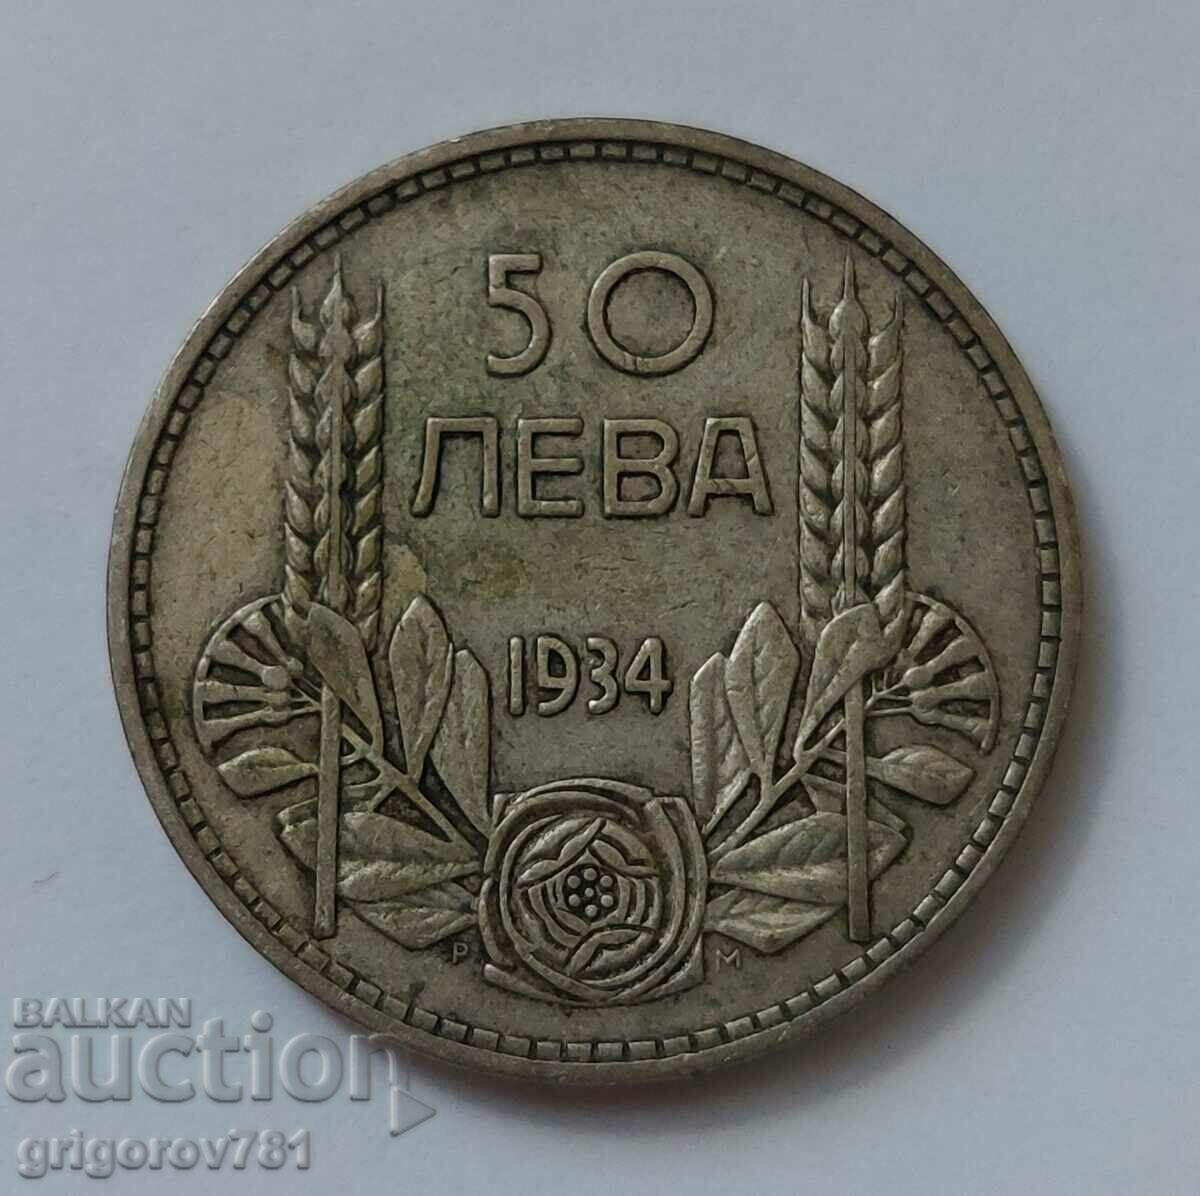 Ασήμι 50 λέβα Βουλγαρία 1934 - ασημένιο νόμισμα #8